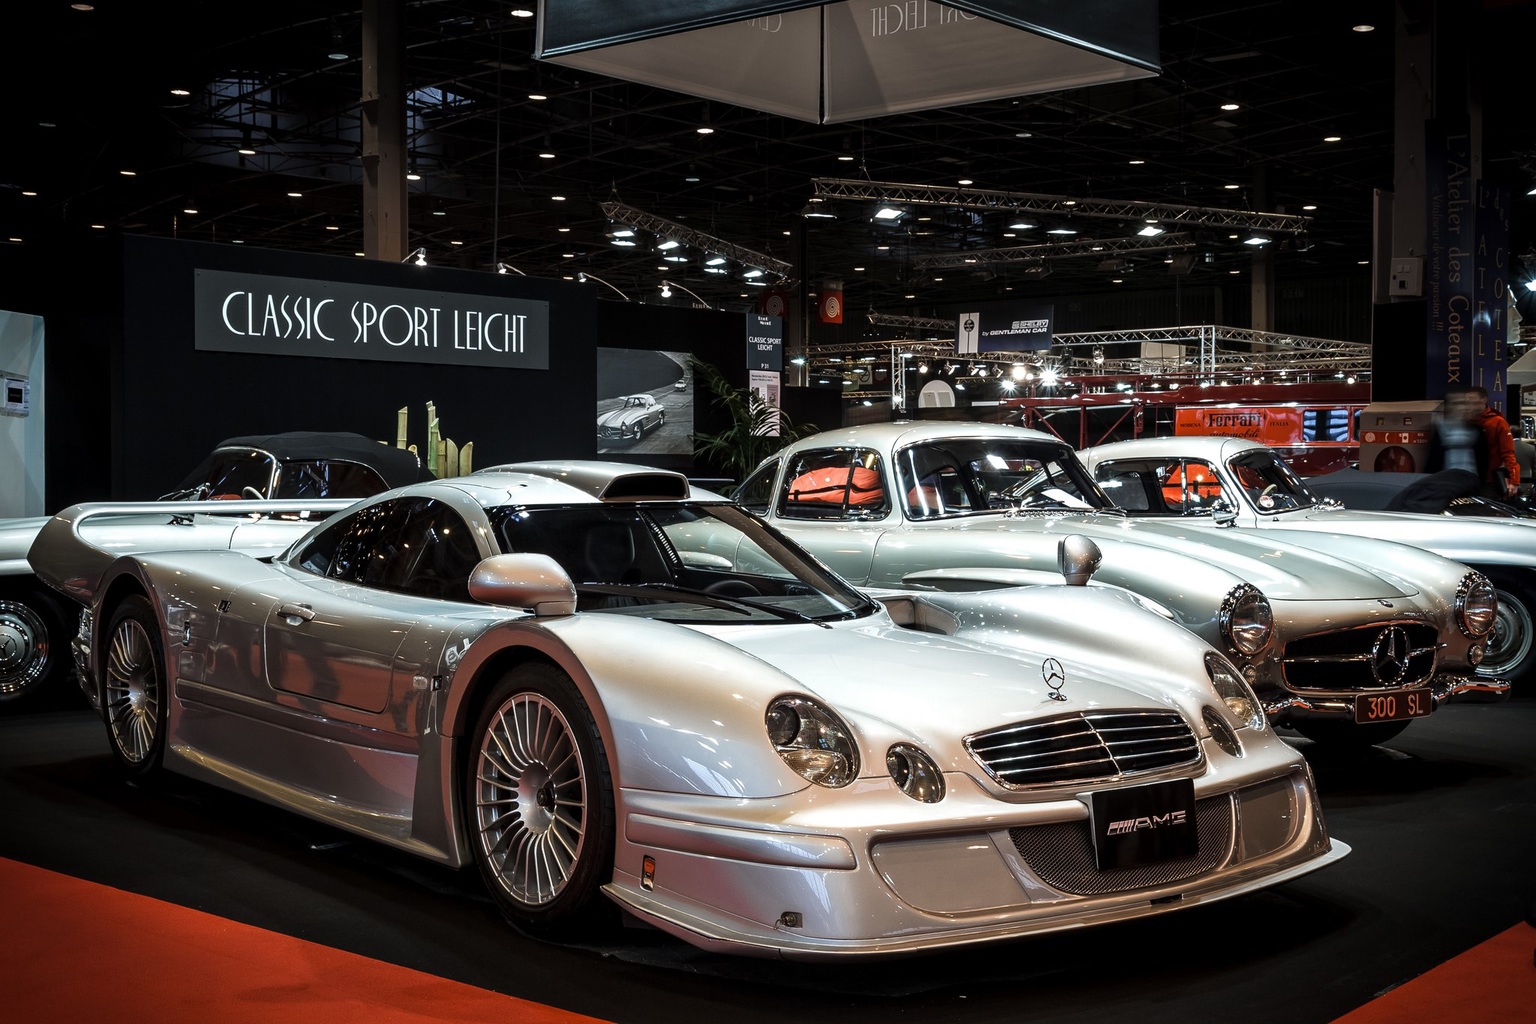 Mẫu xe Mercedes-Benz CLK LM Straßenversion (AMG) được mệnh danh là xe dành cho giới siêu giàu